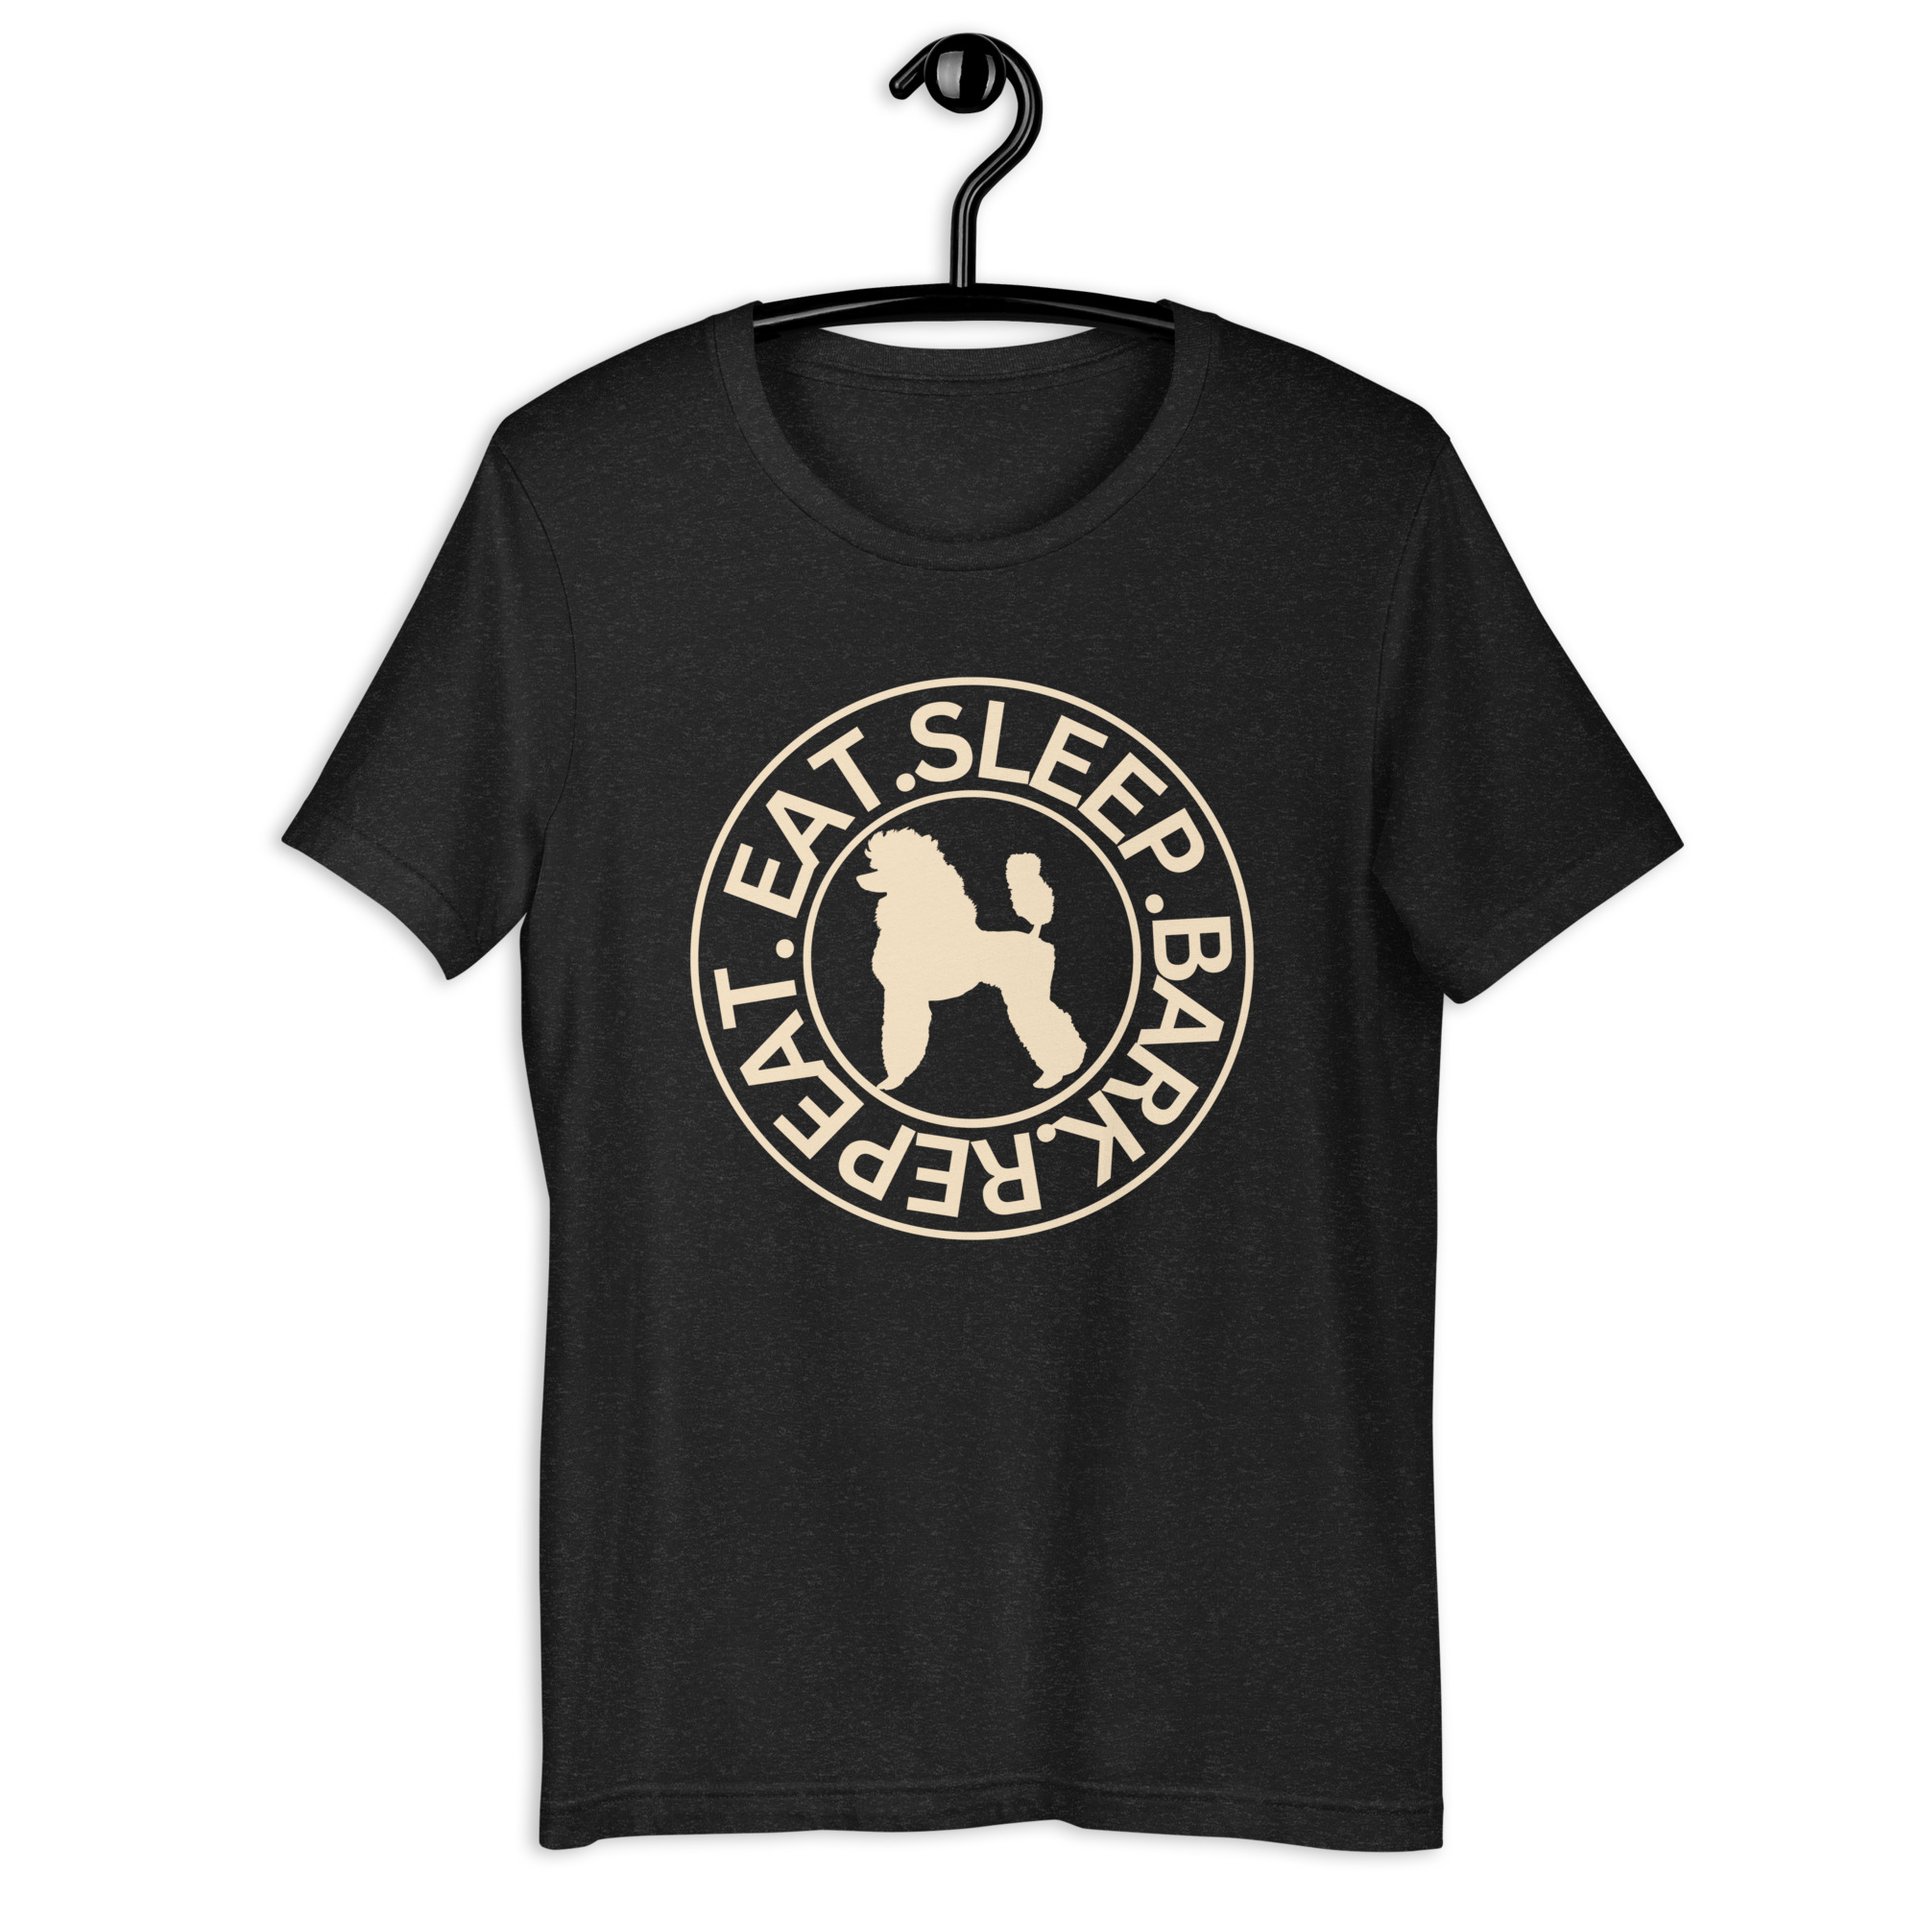 Eat Sleep Repeat Bark Miniature Poodle Unisex T-Shirt. Black Heather